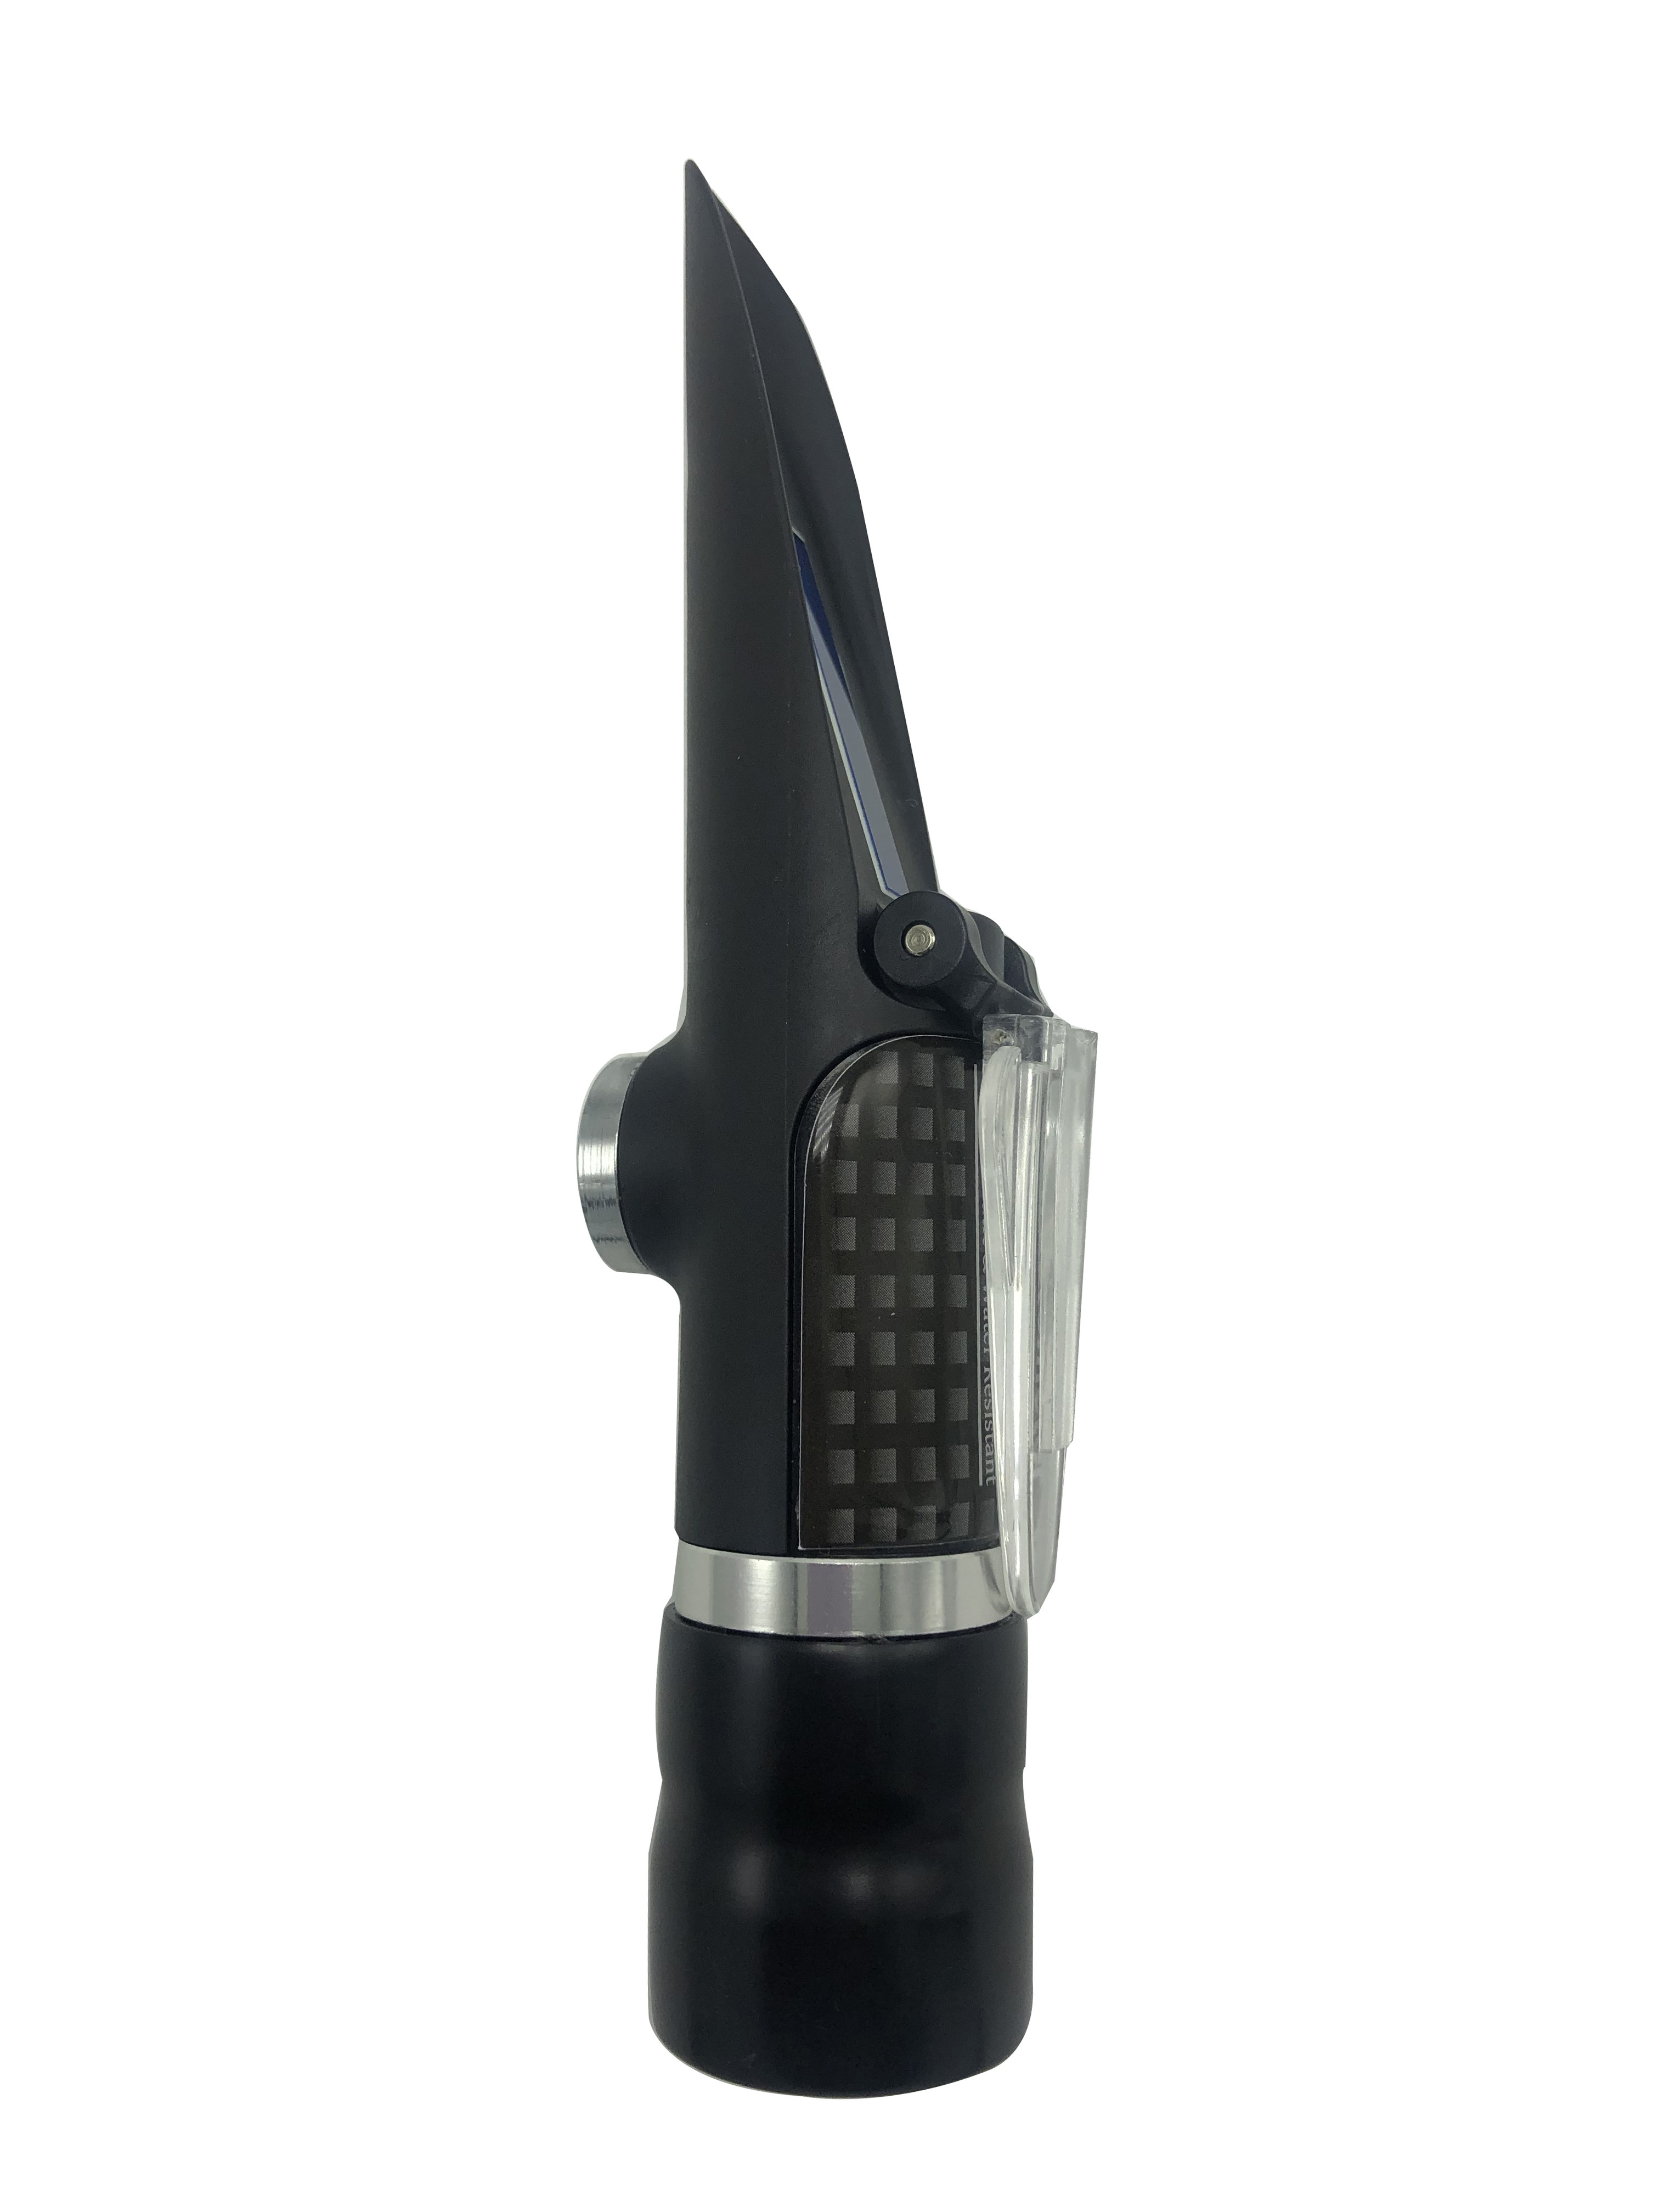 Brix Refractometer Range 45-82% of waterproof handheld refractometer